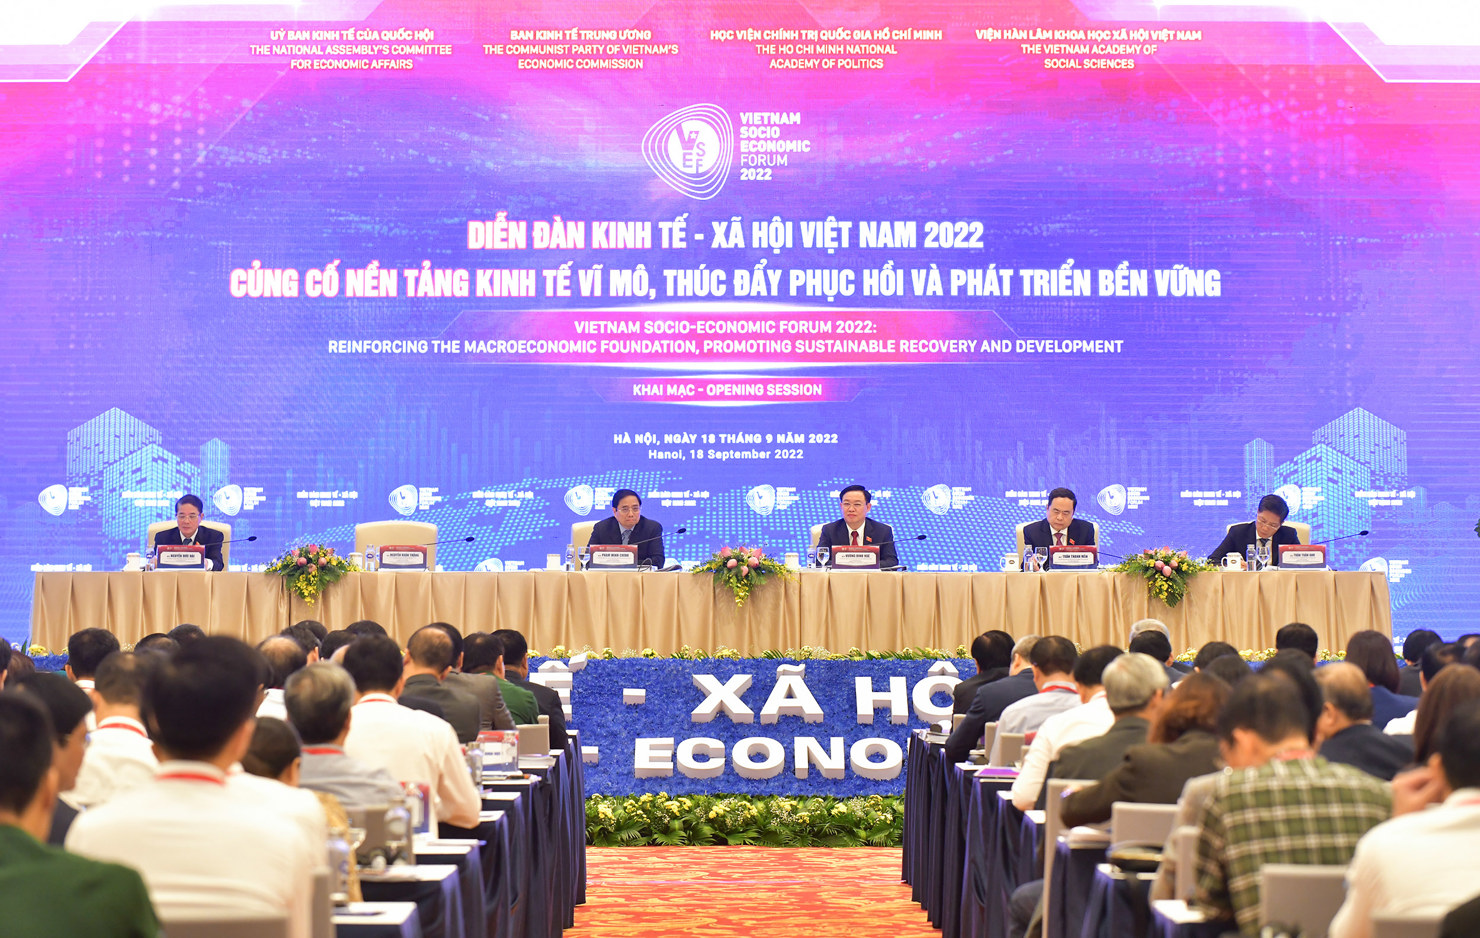 Diễn đàn Kinh tế - Xã hội Việt Nam năm 2022' với chủ đề ''Củng cố nền tảng kinh tế vĩ mô, thúc đẩy phục hồi và phát triển bền vững''